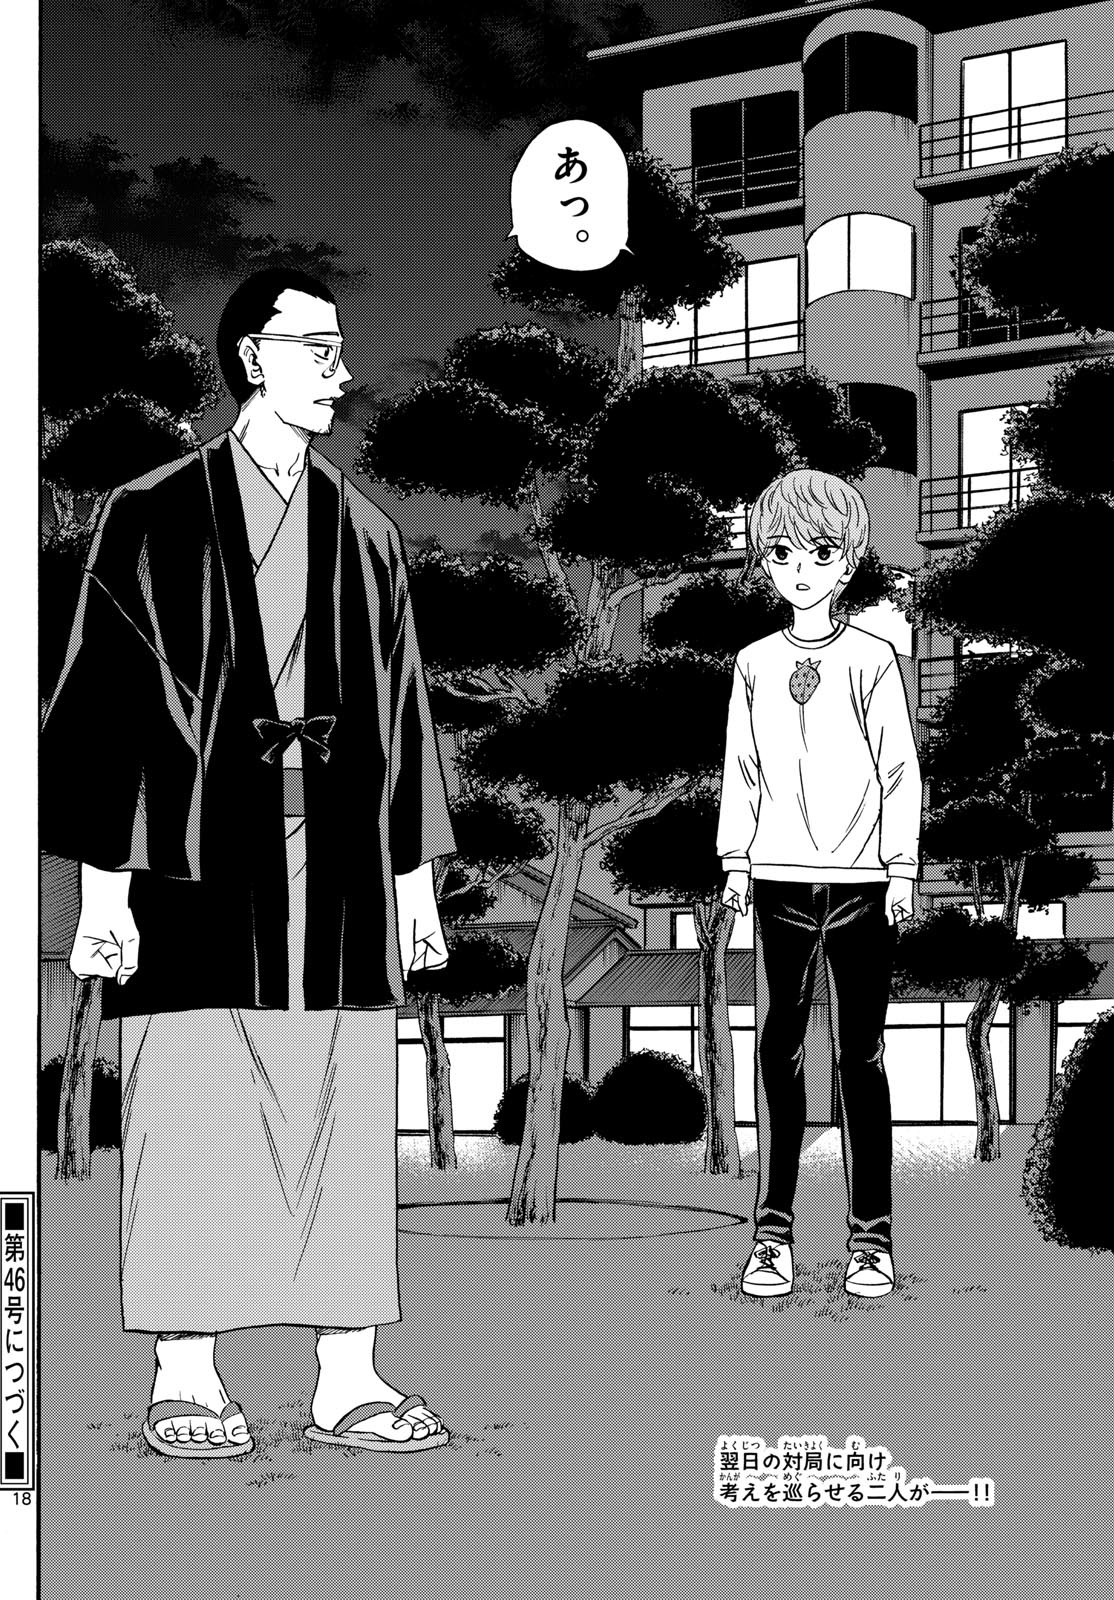 Ryu-to-Ichigo - Chapter 162 - Page 18